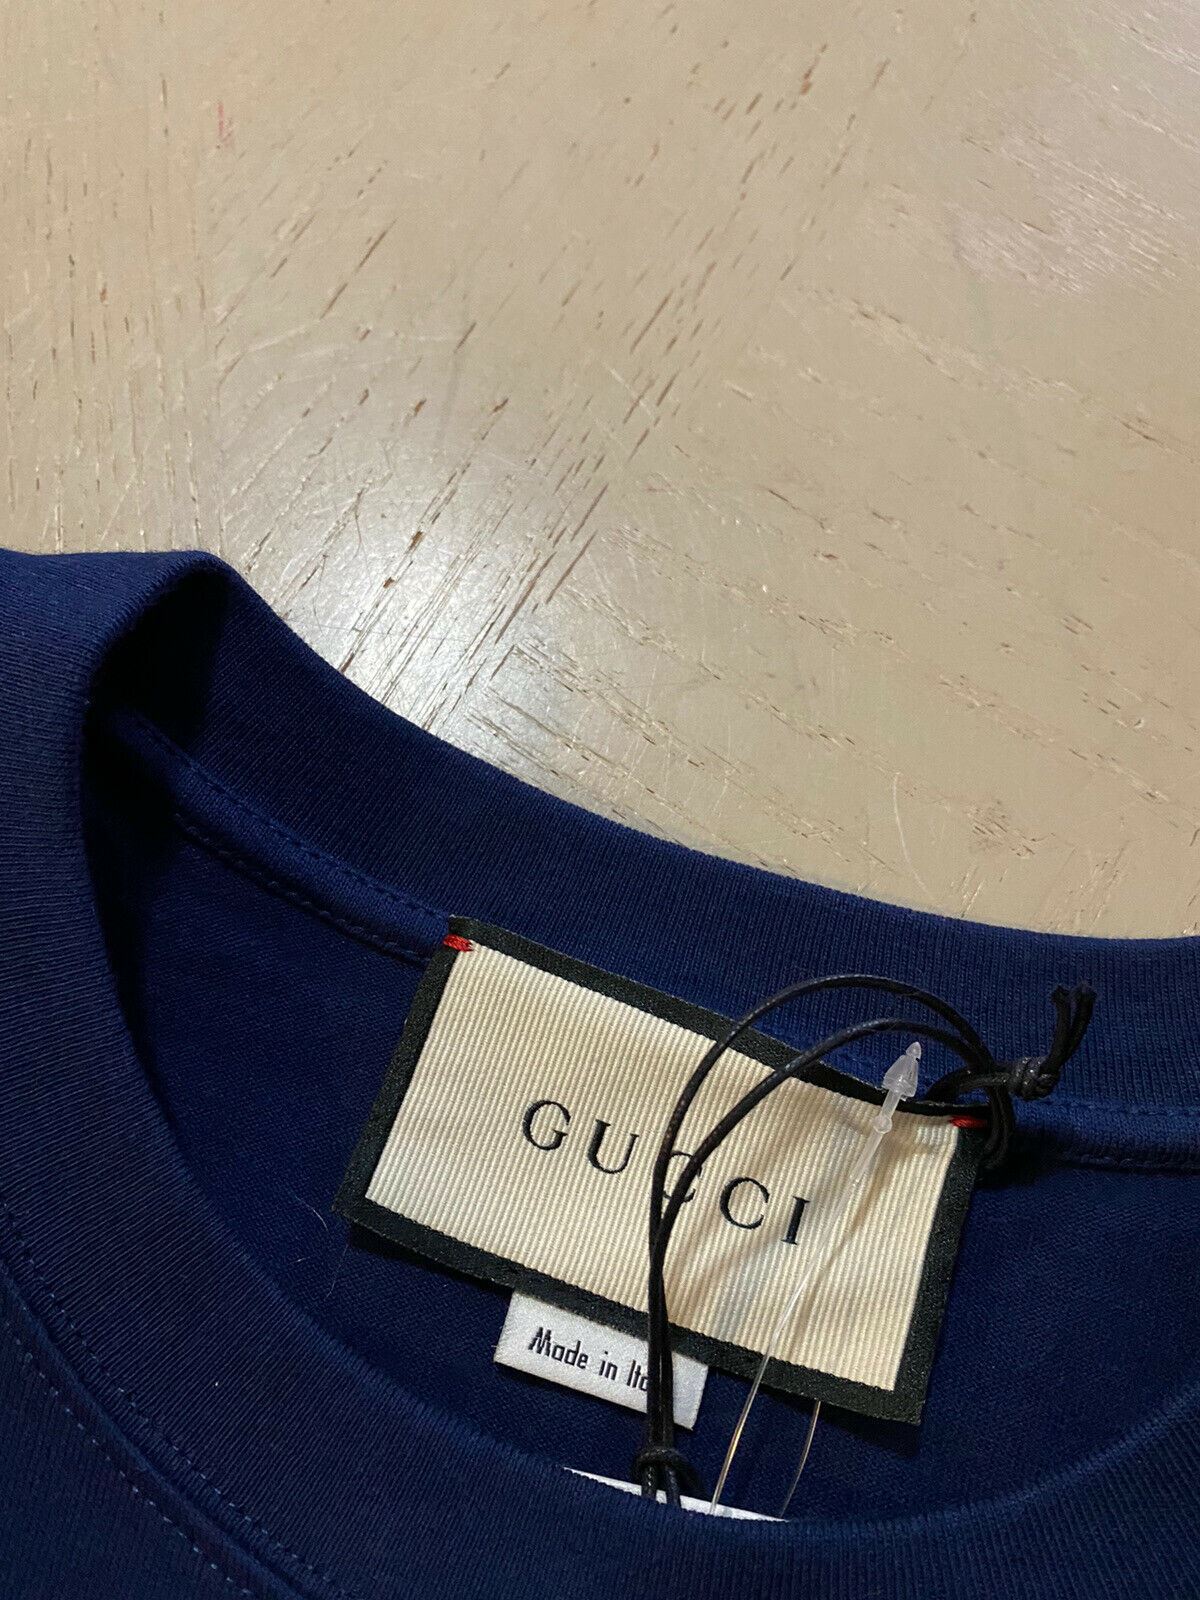 Neues Gucci Herren-Kurzarm-T-Shirt in Blau, Größe M, Italien